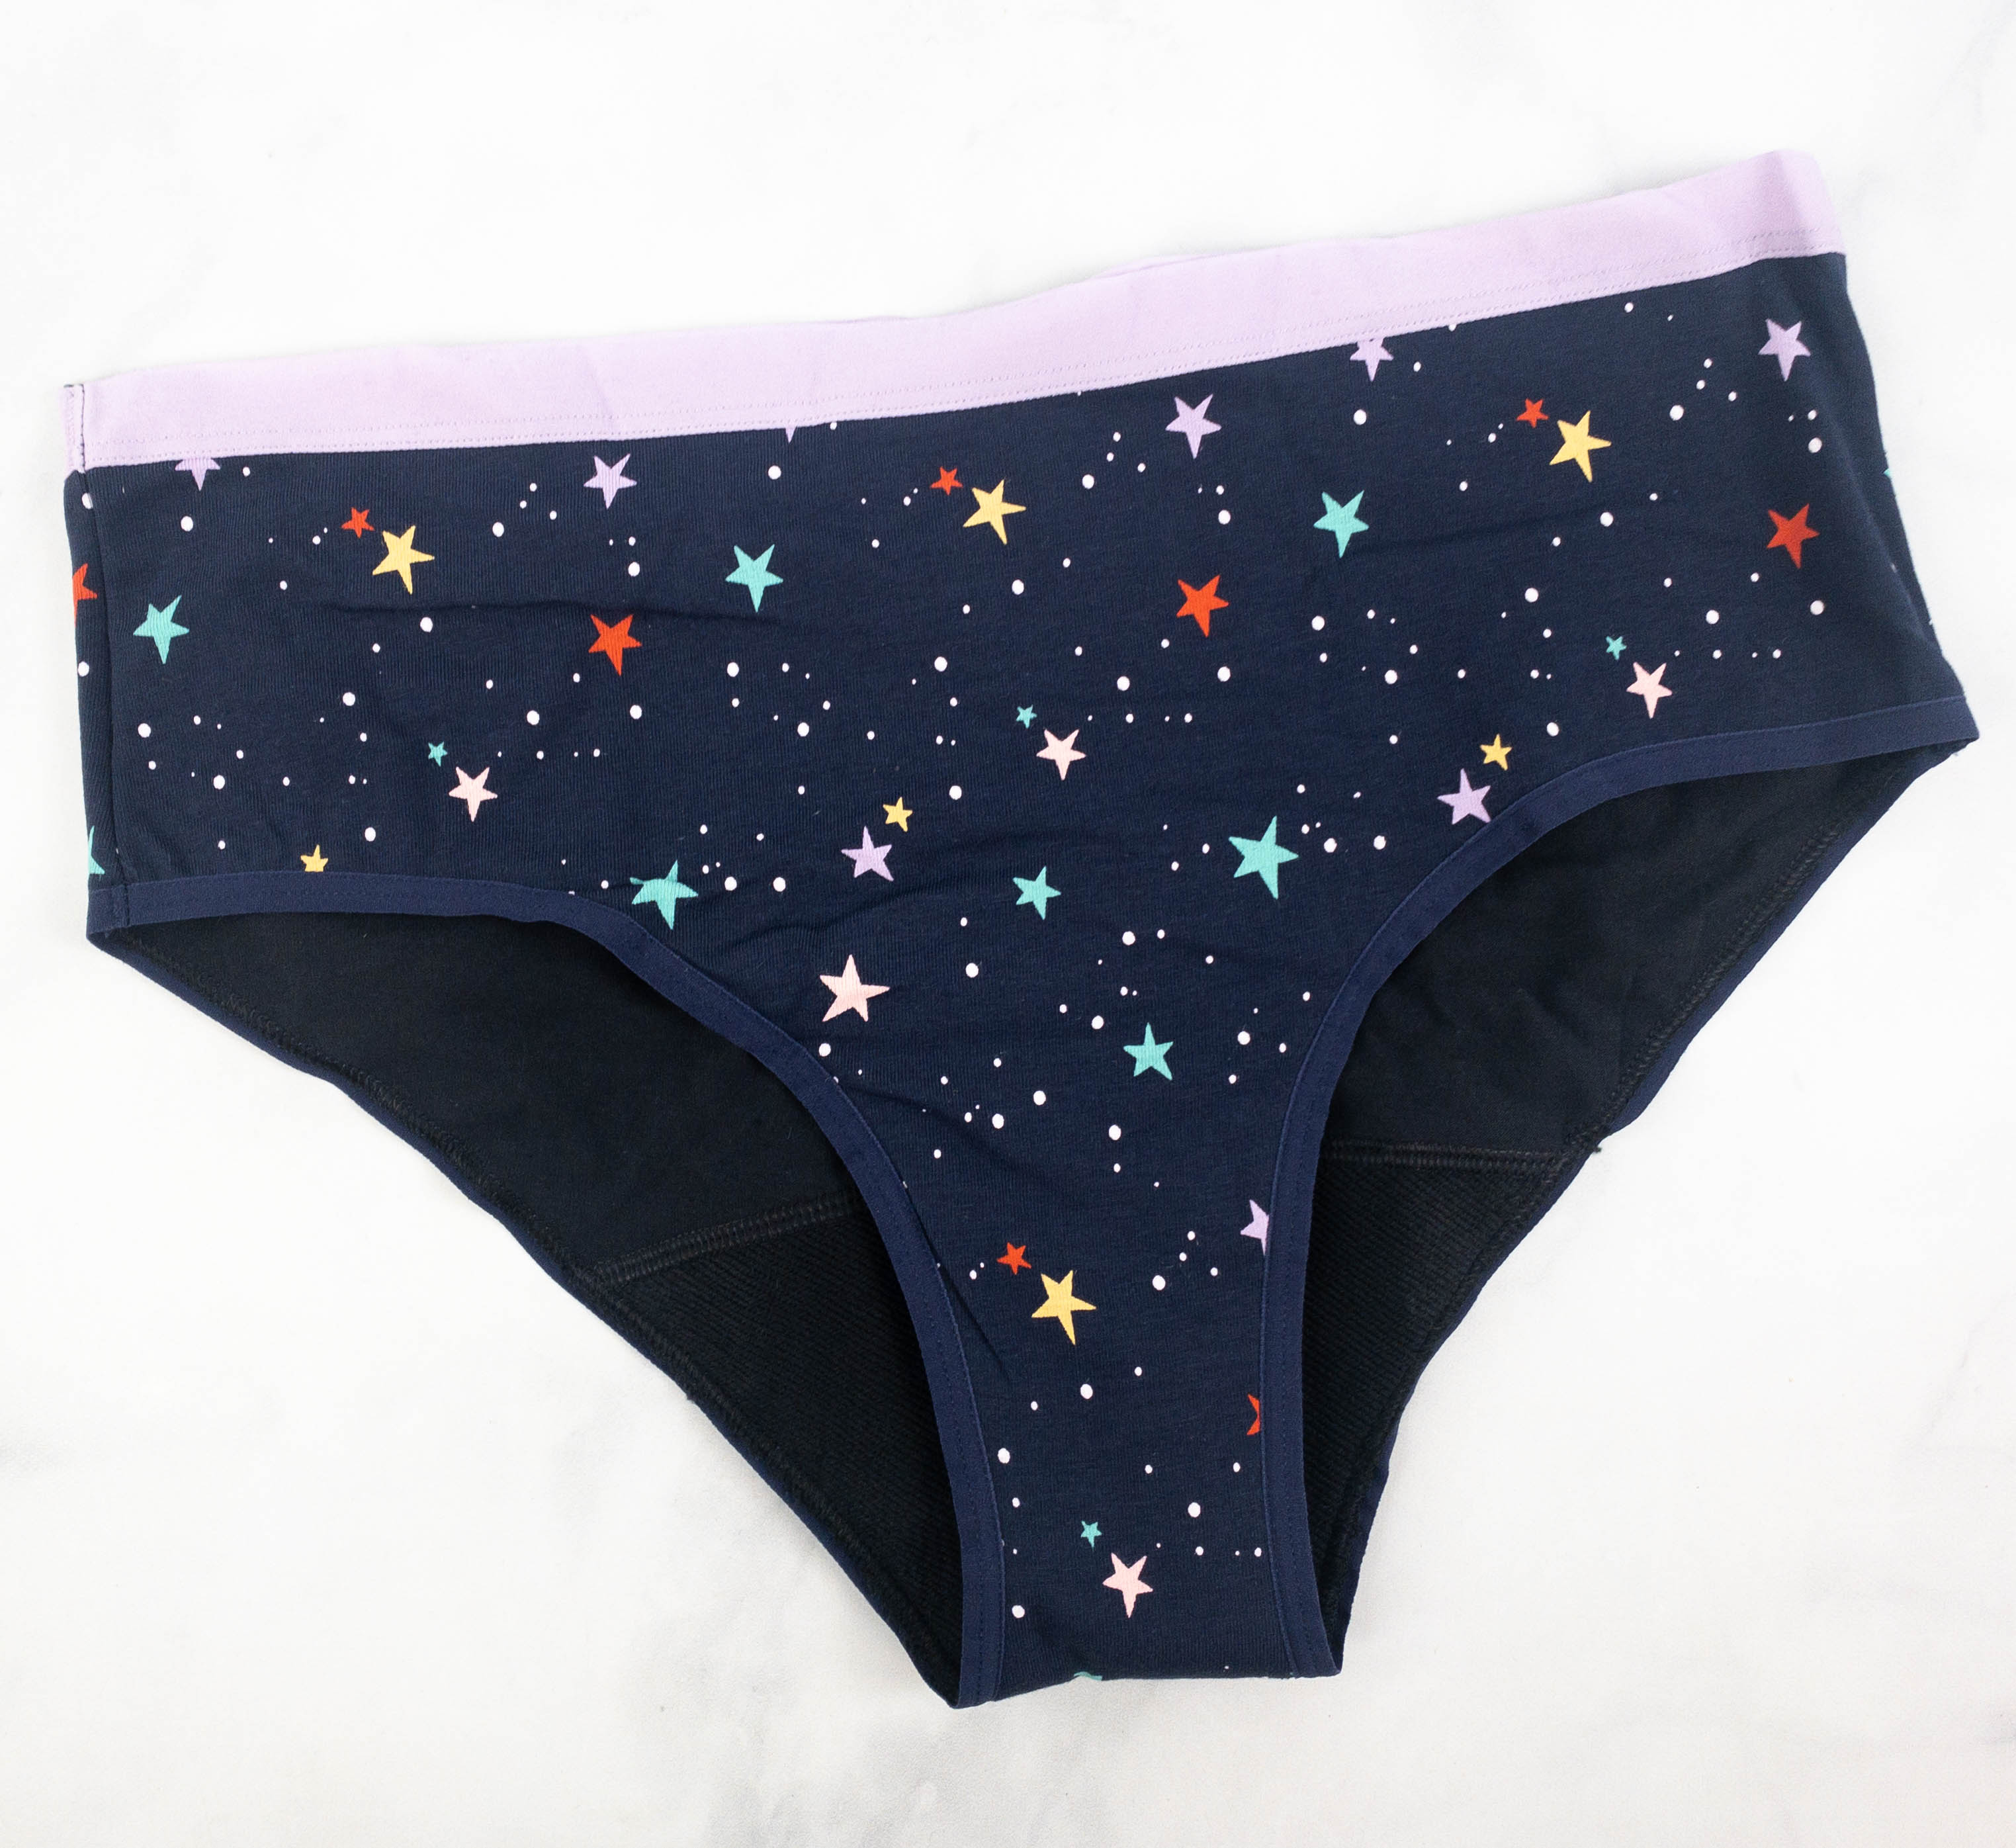 Thinx Teens Thinx BTWN Teen Period Underwear - Fresh Start Period Kit for  Teen